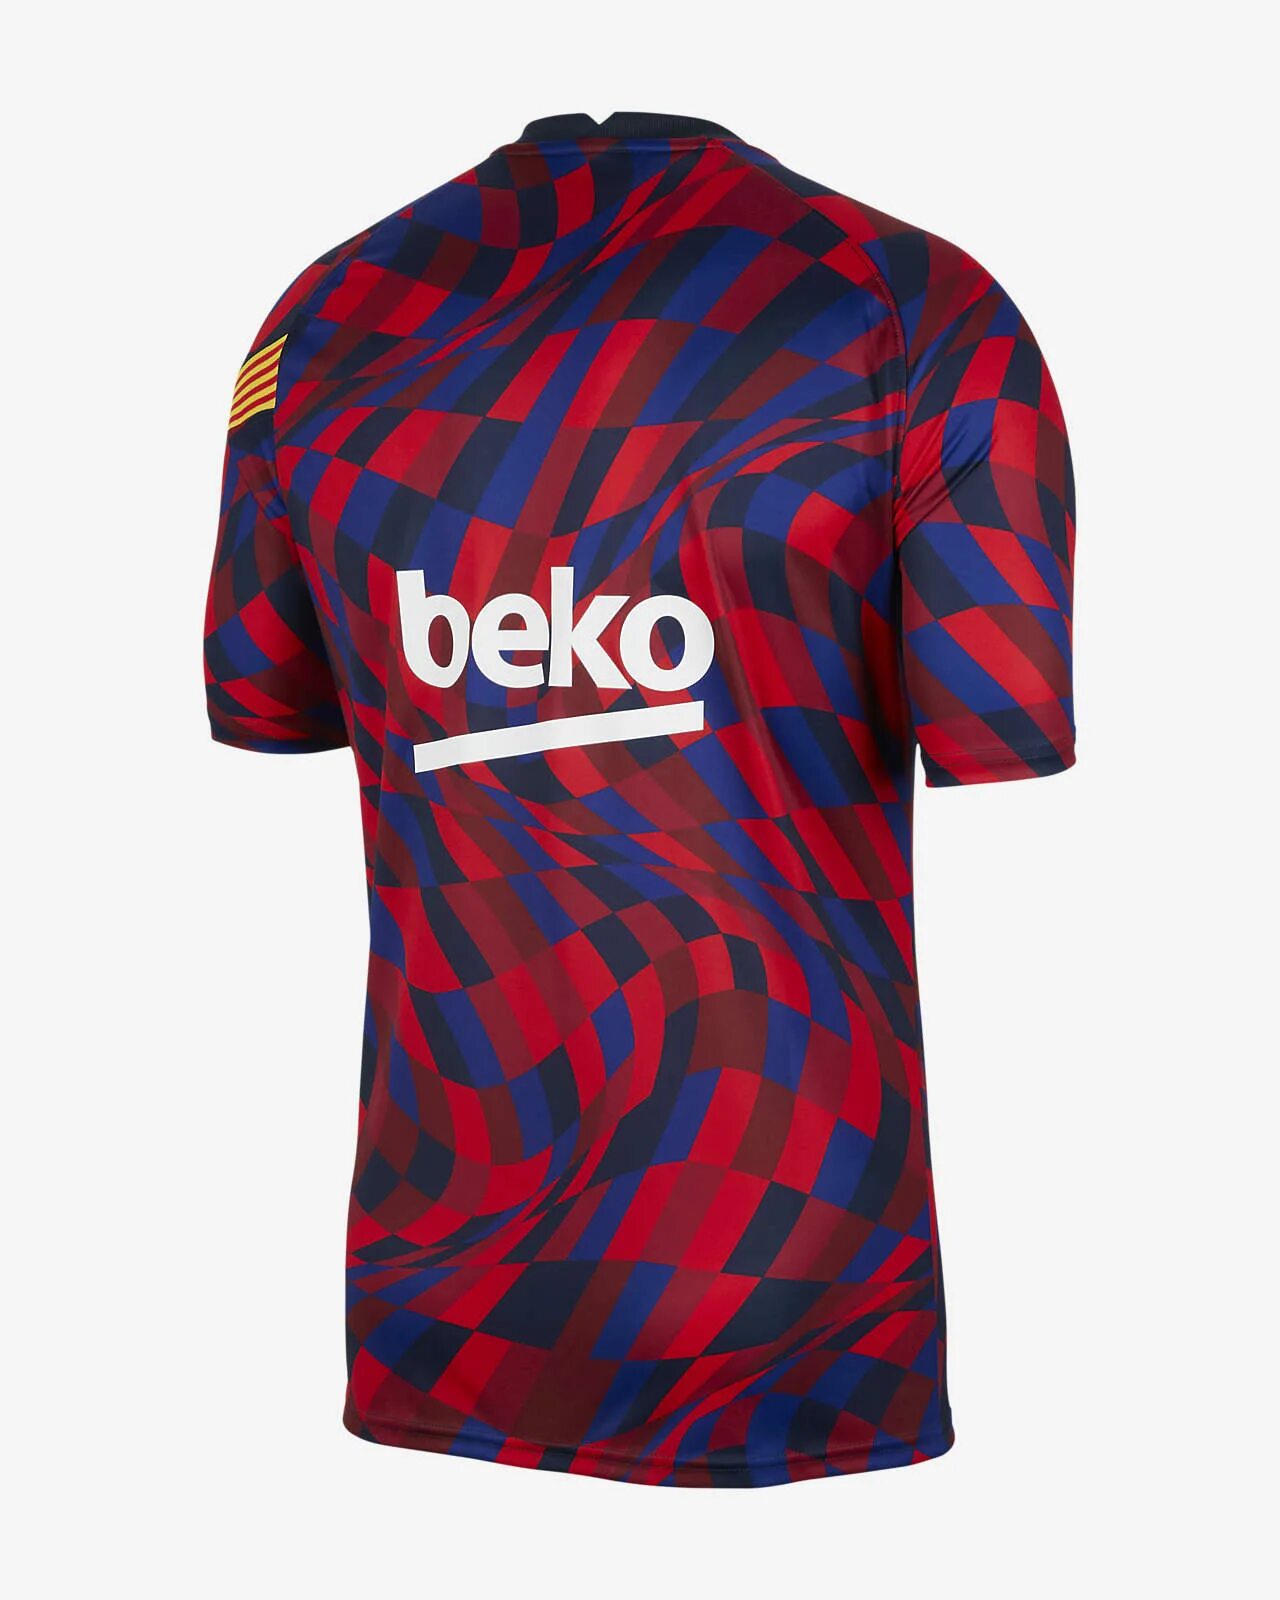 Купить форму барселоны. Футболка Барселона найк 2021. Nike FC Barcelona Training Jersey. Форма Барселоны 2020. Тренировочная форма Барселоны 2020-2021.